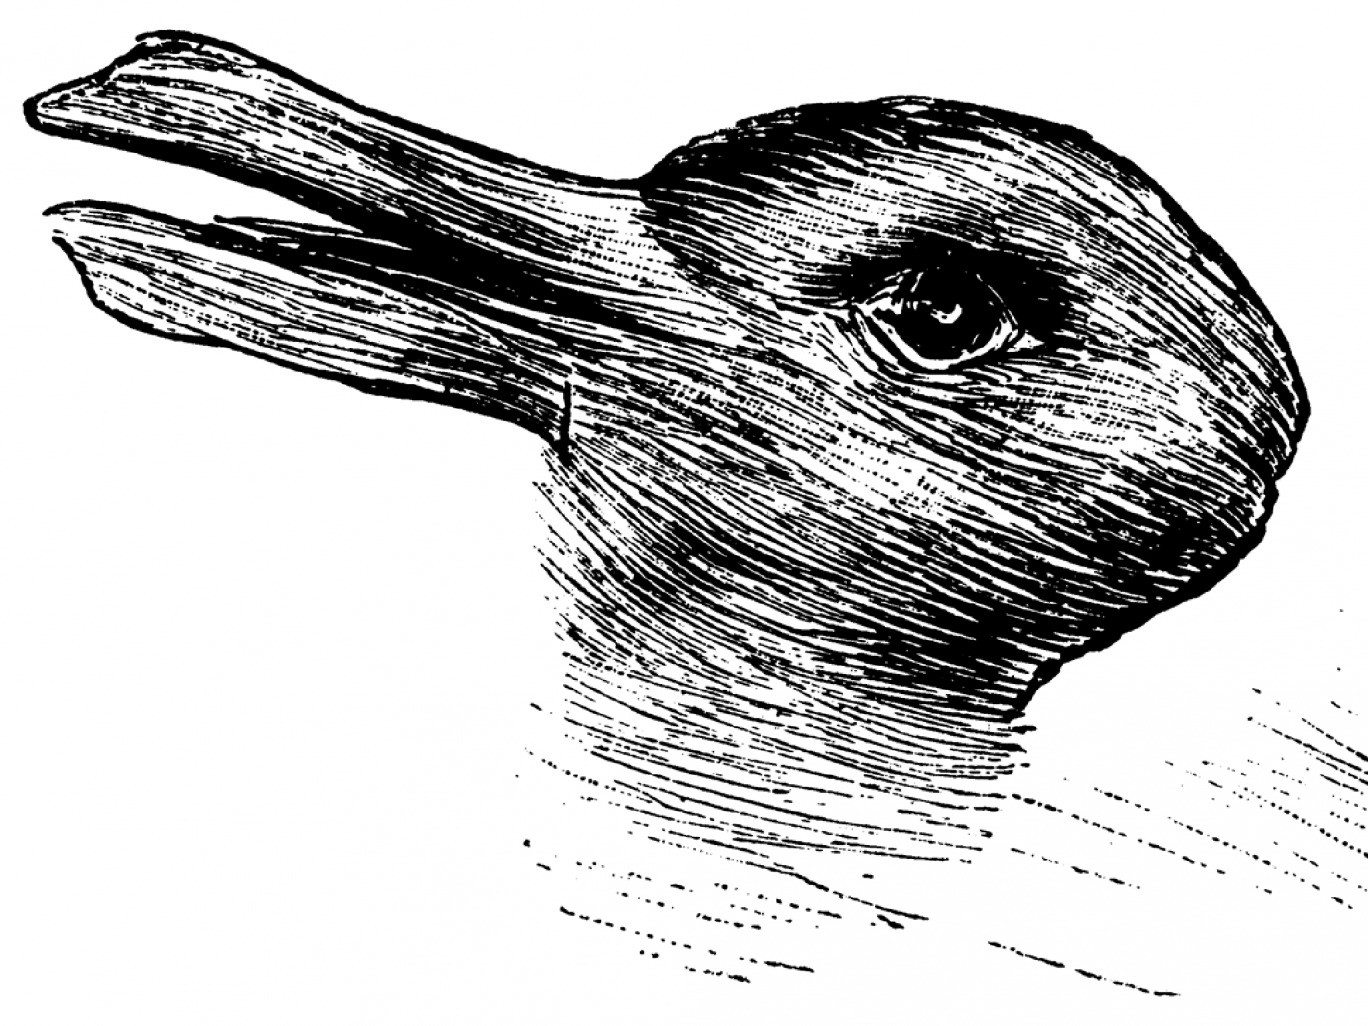 O que você vê? Um pato ou um coelho? Fonte: independent.co.uk